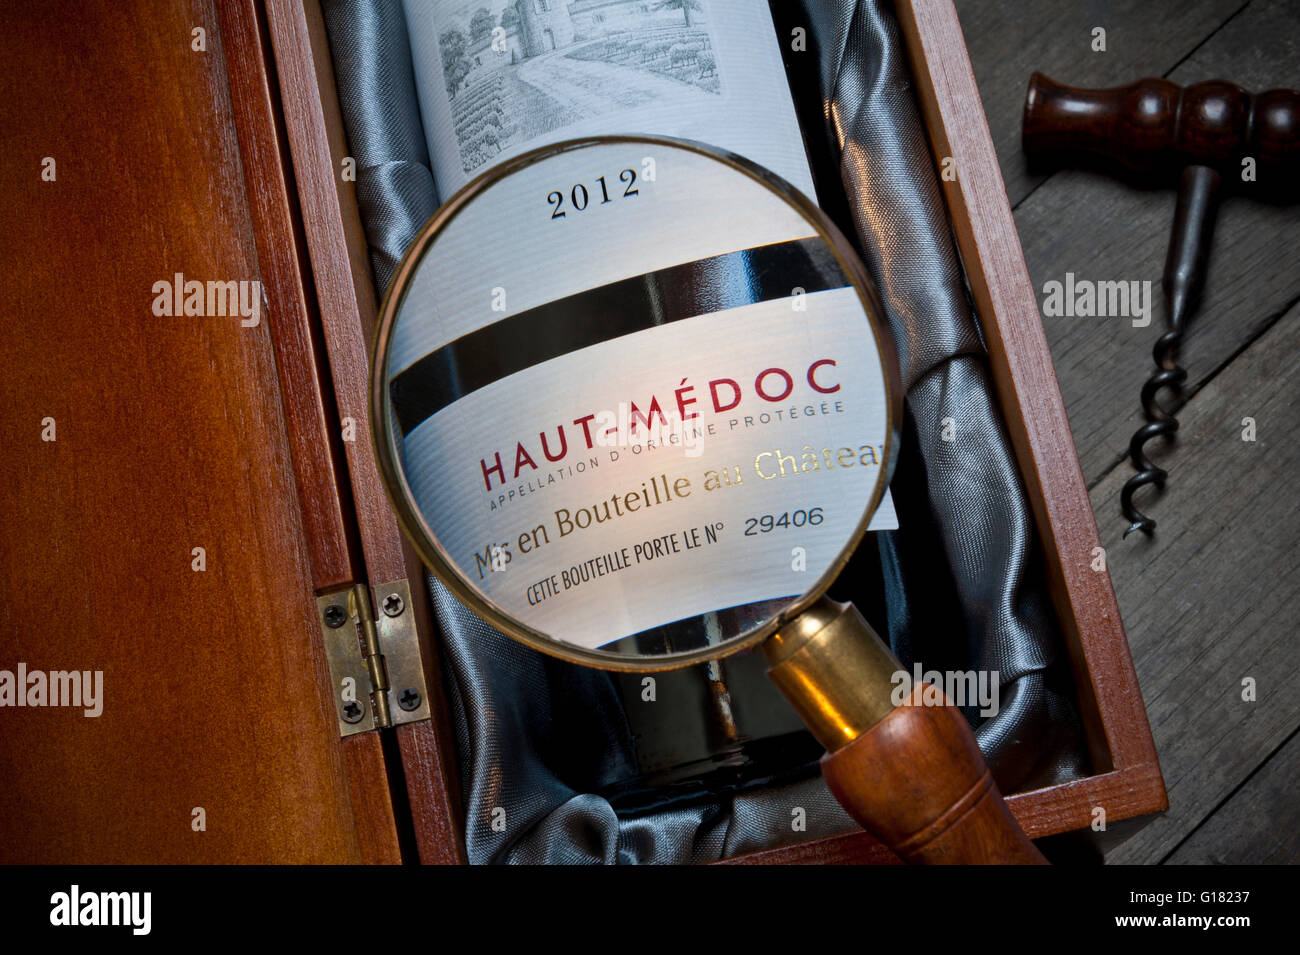 Étiquette de bouteille de vin Haut-Médoc 2012, loupe pour vérifier l'authenticité etc., dans la boîte de présentation Left Bank Bordeaux France Banque D'Images